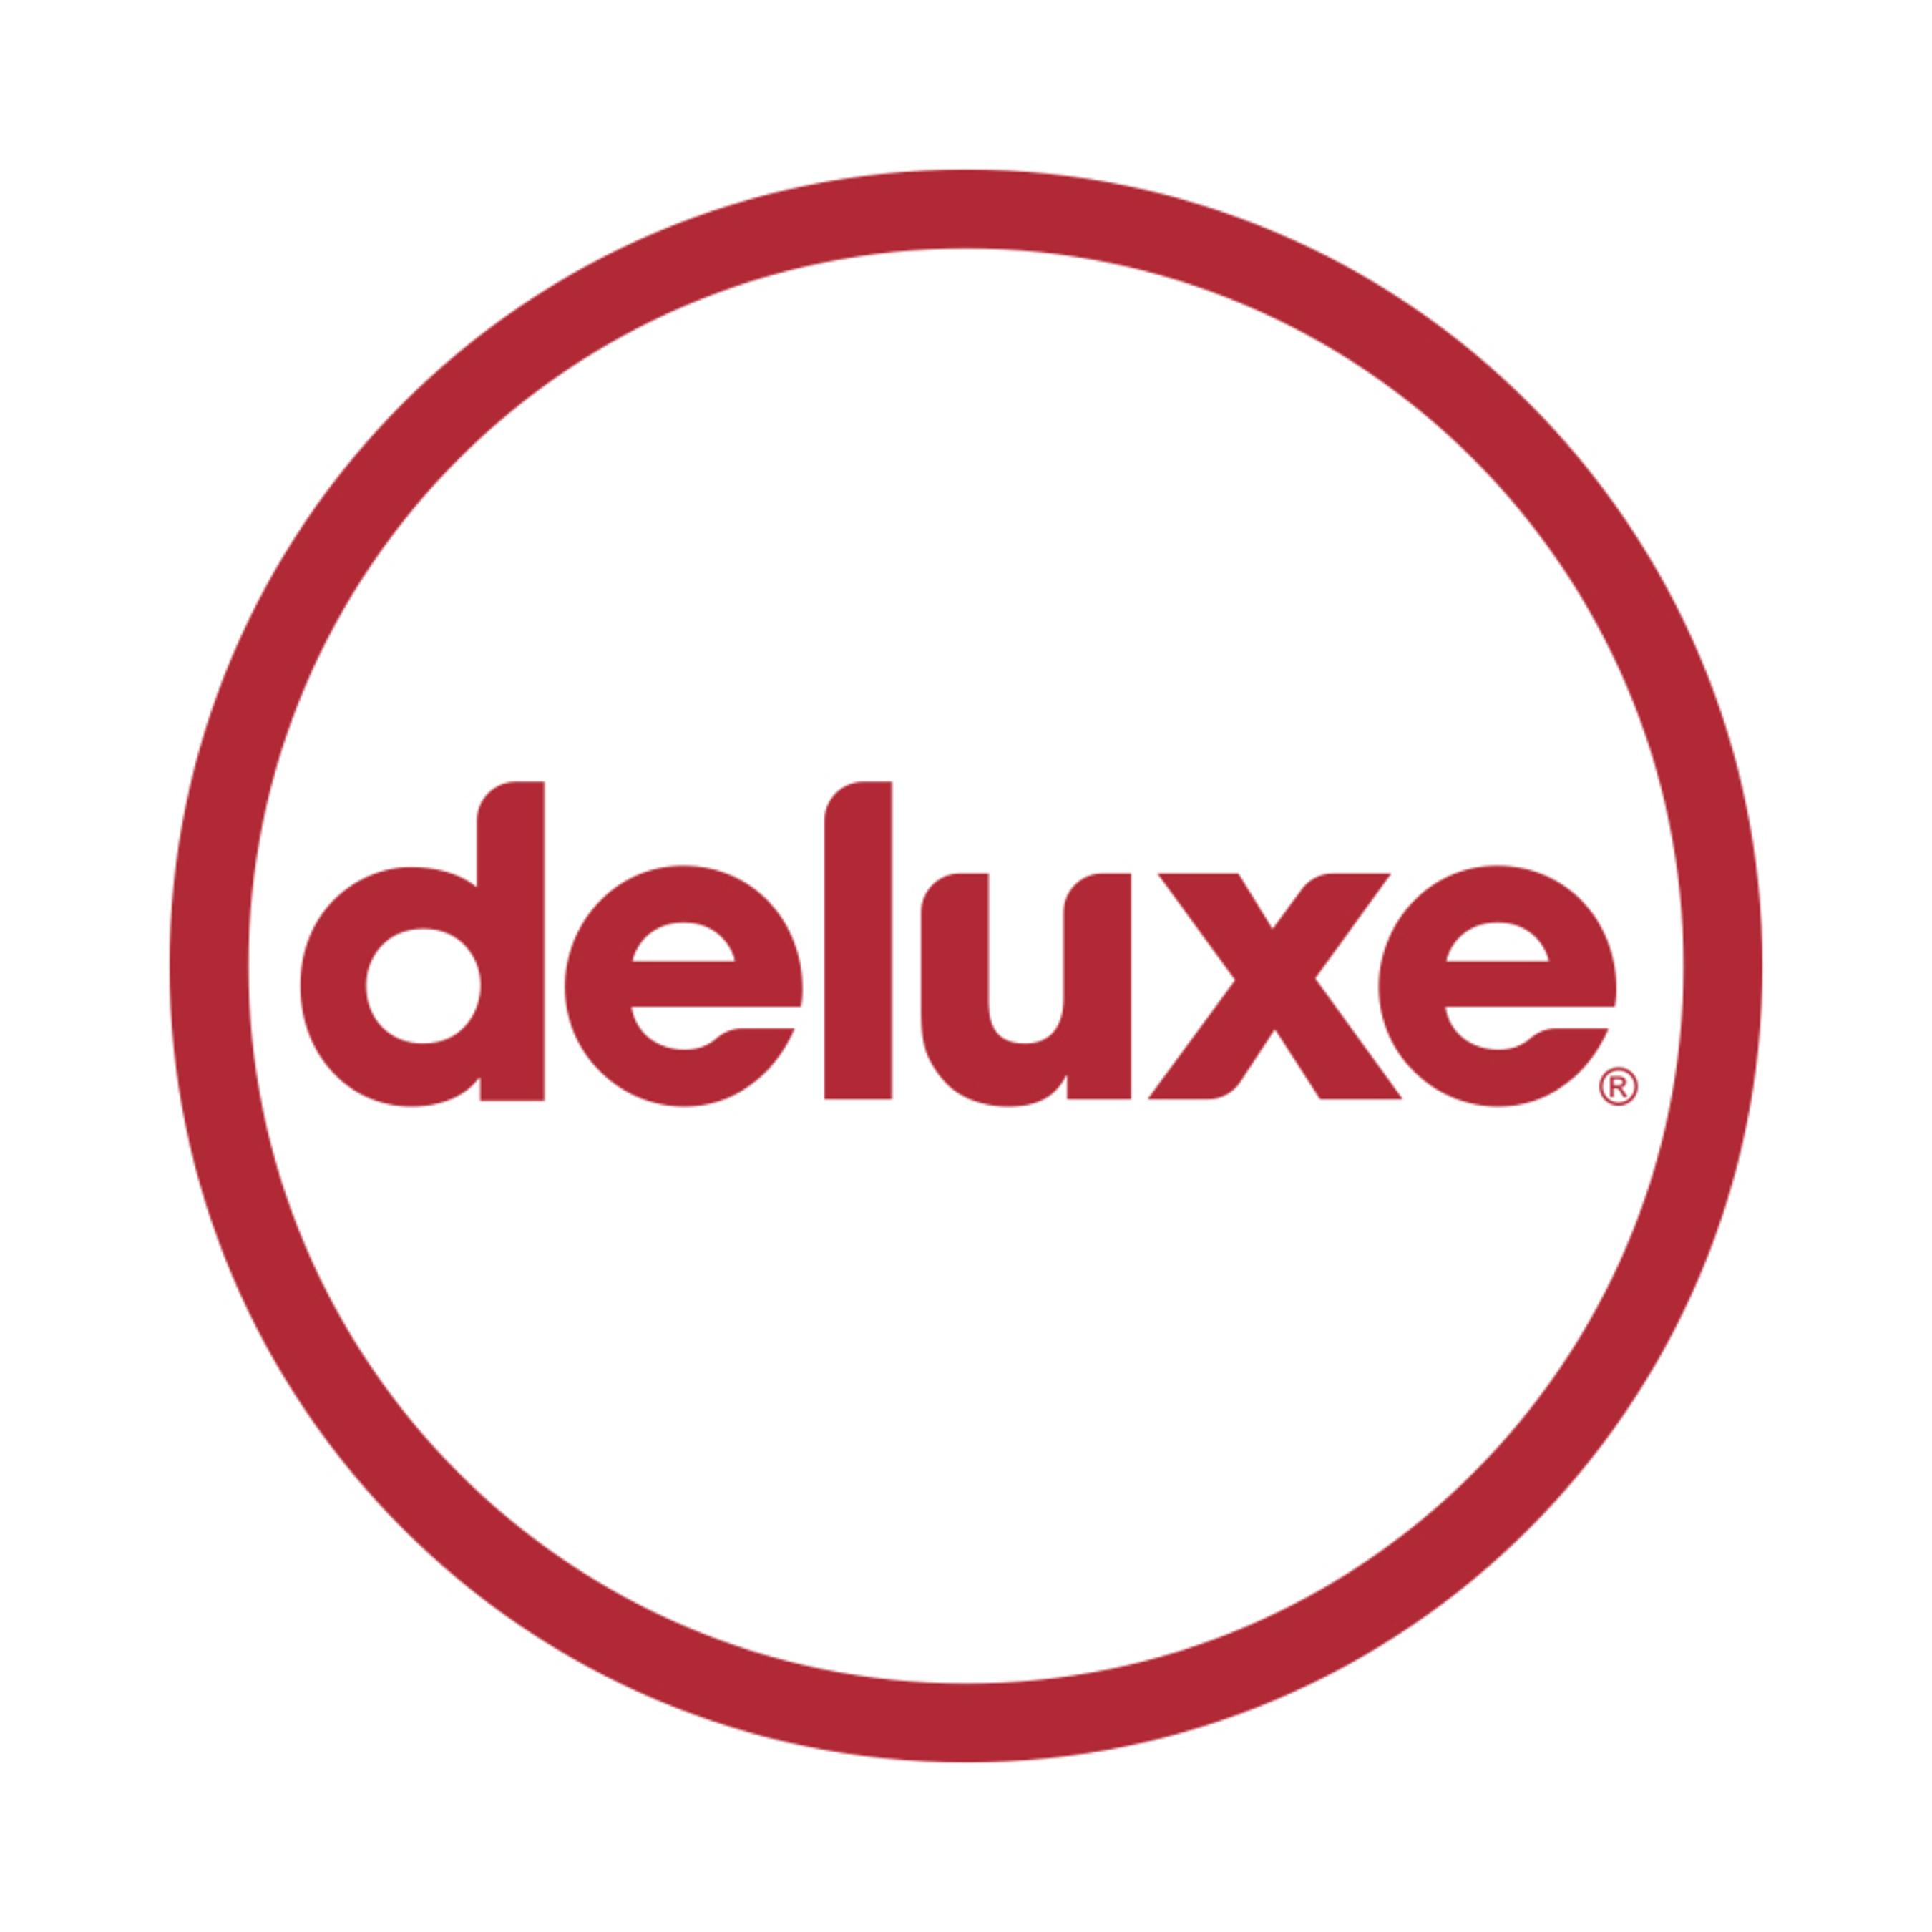 Deluxe logo (PRNewsFoto/Deluxe) (PRNewsFoto/)